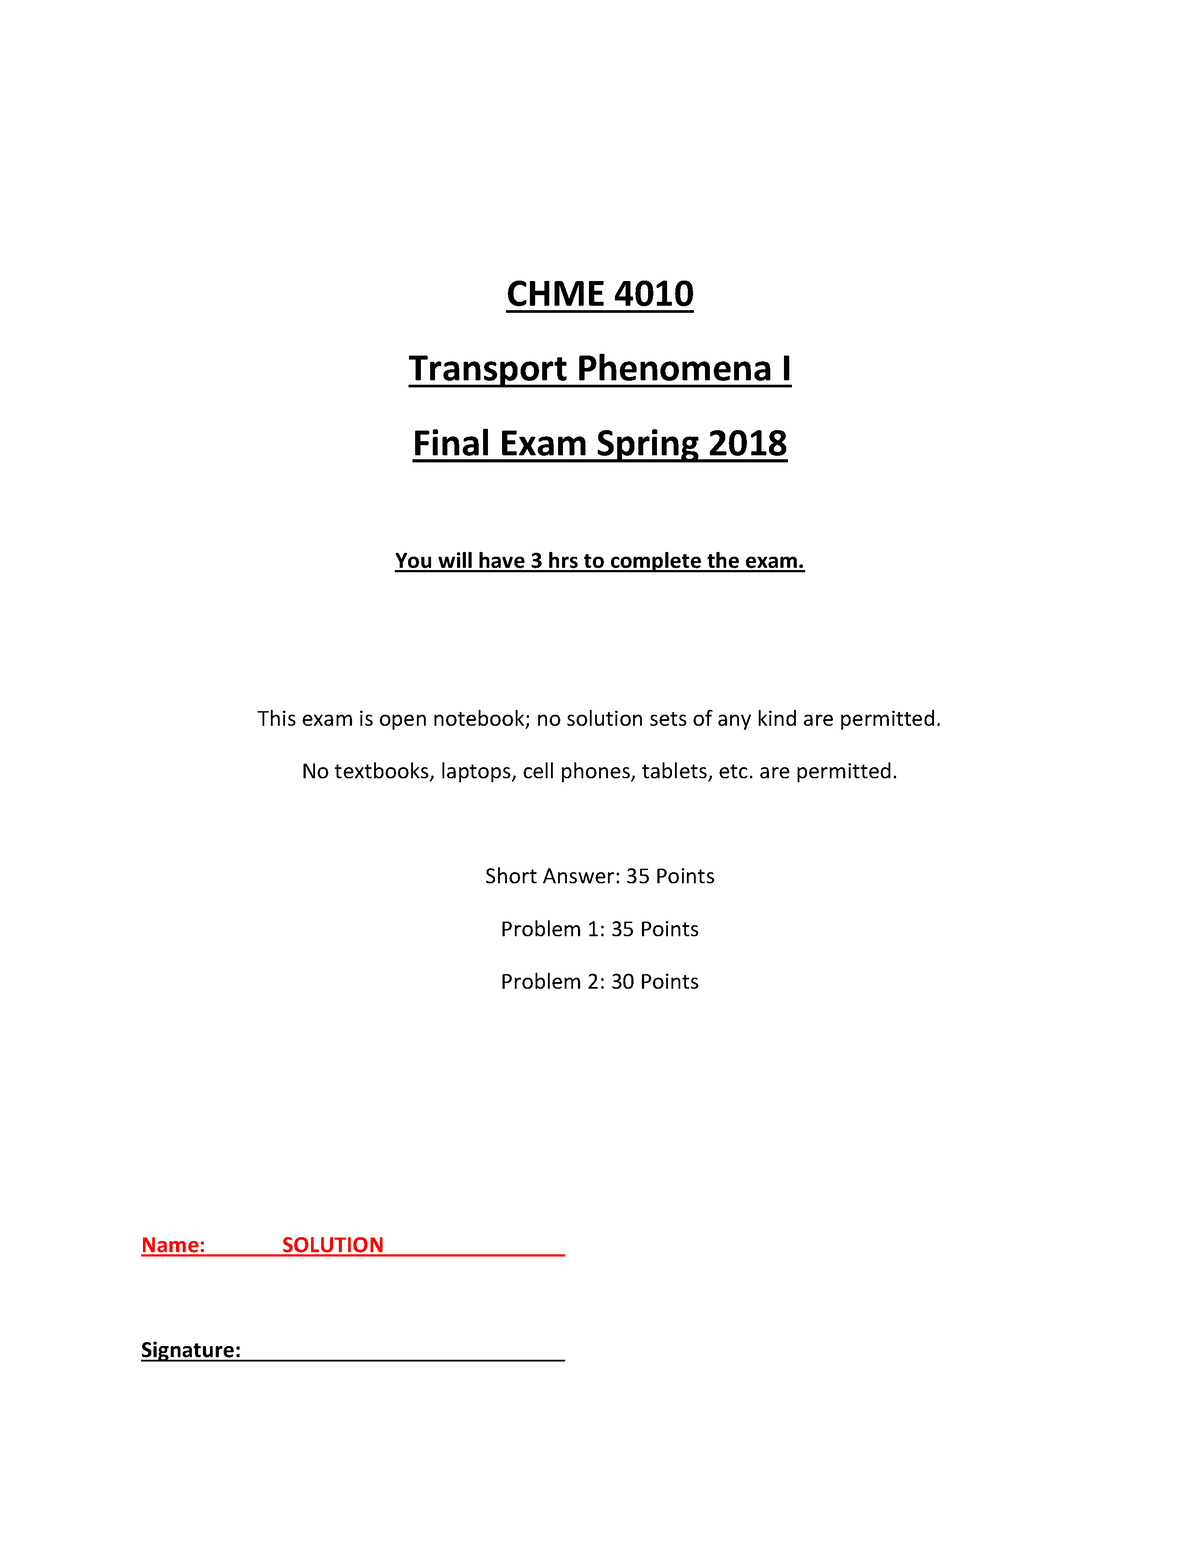 S2018 final Back exam CHME 4010 Transport Phenomena I Final Exam